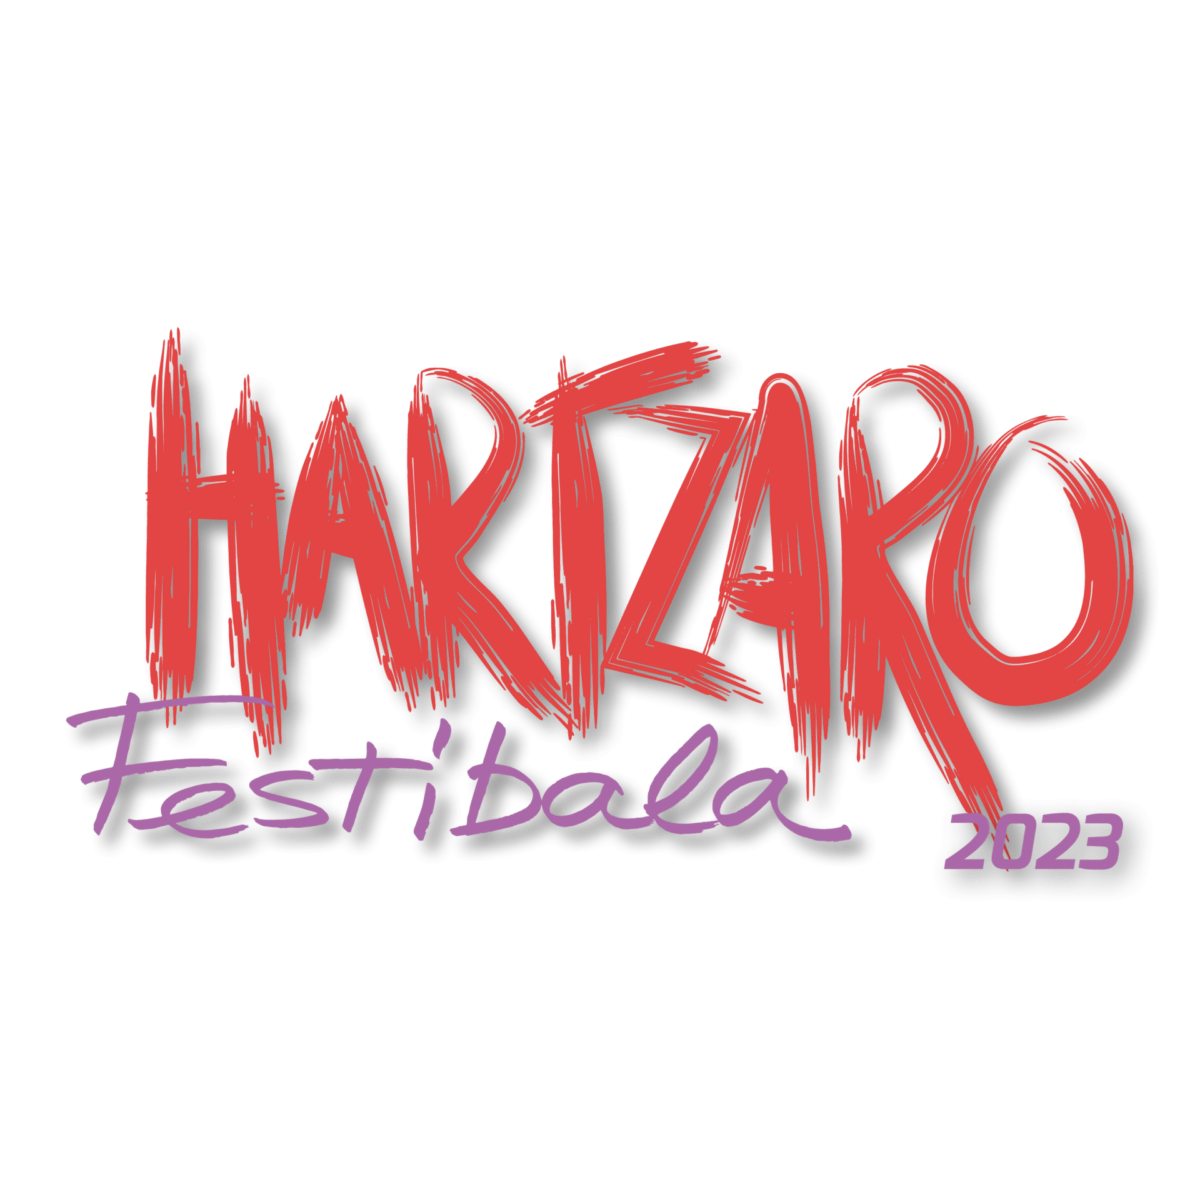 Festival Hartzaro